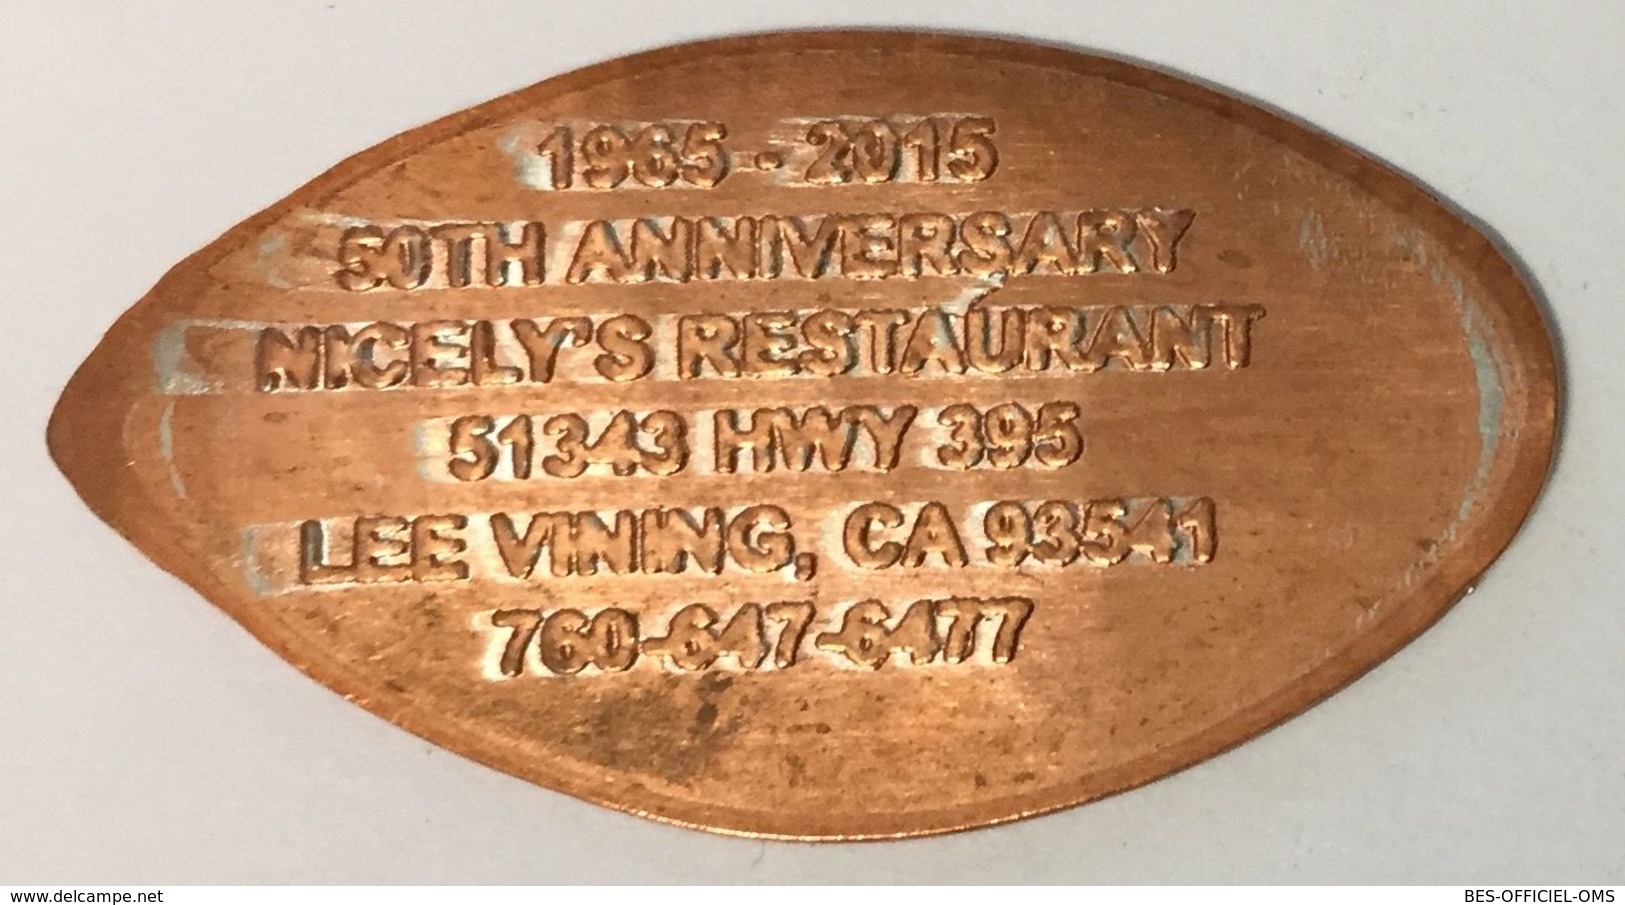 ÉTATS-UNIS USA MONO LAKE LEE VINING CA NICELY'S PENNY 1965-2015 ELONGATED COIN PIÈCE ÉCRASÉE MEDALS TOKENS - Monete Allungate (penny Souvenirs)